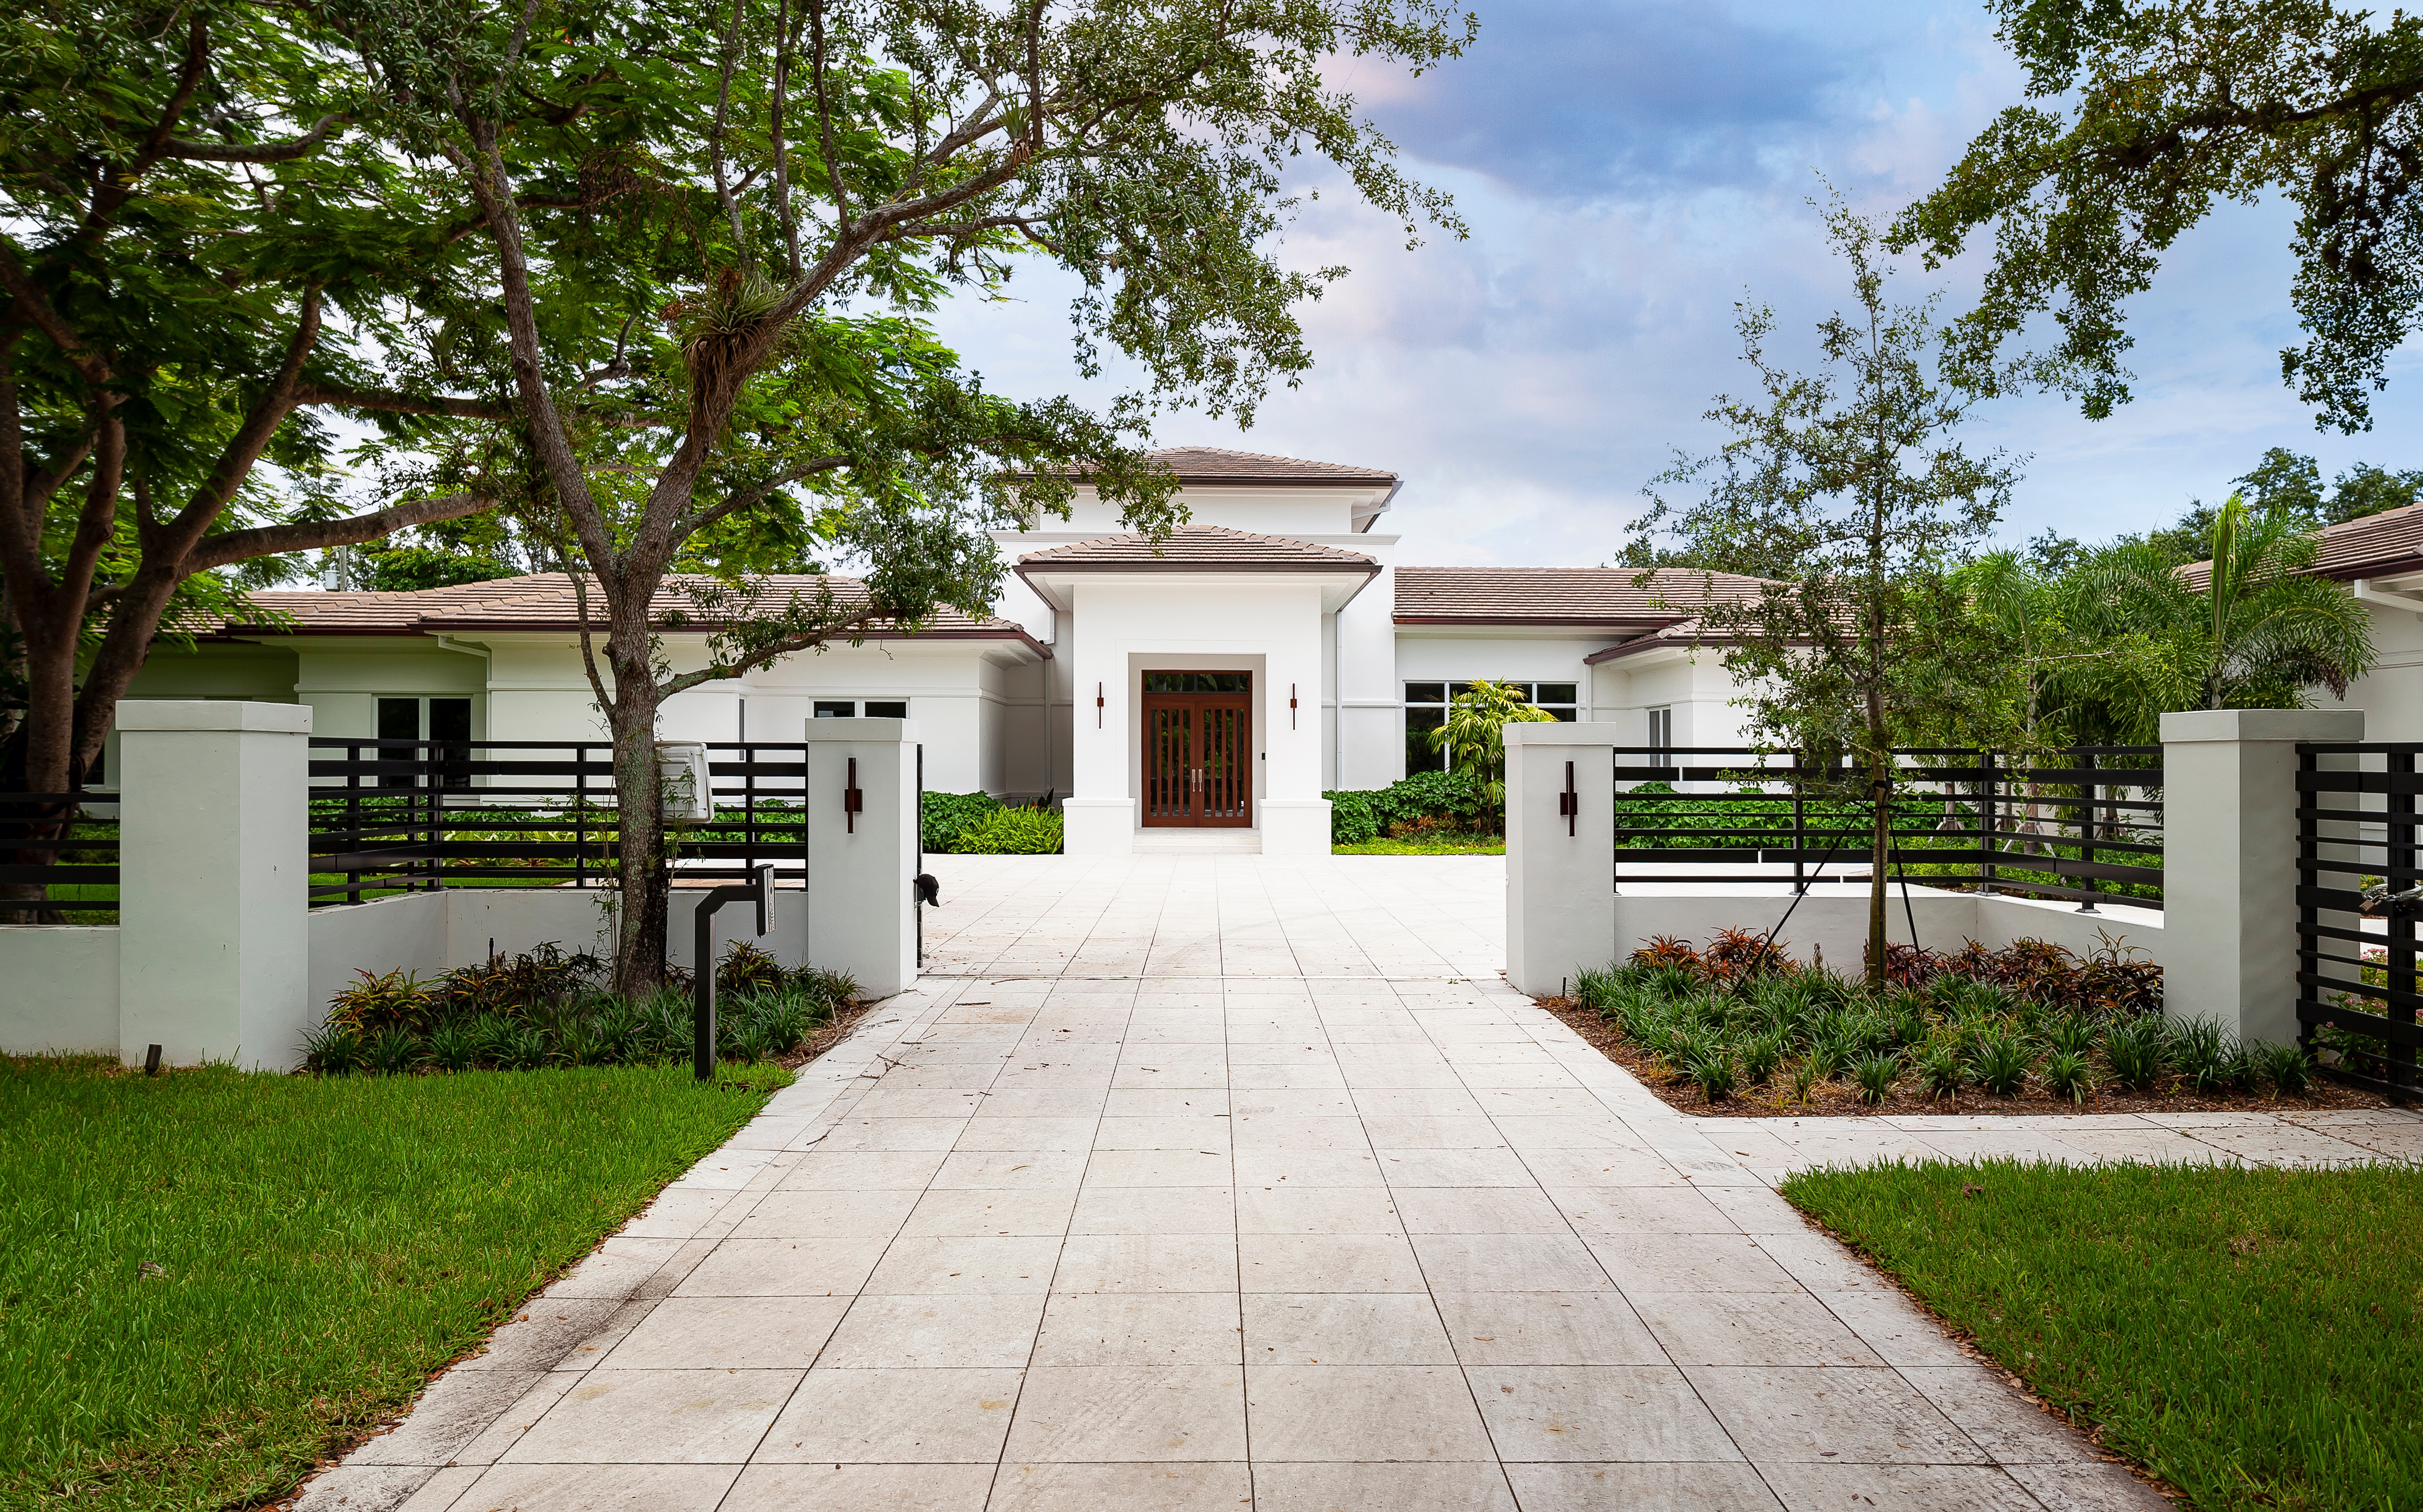 Eleganter Eingang zu einem Herrenhaus. | Quelle: Shutterstock